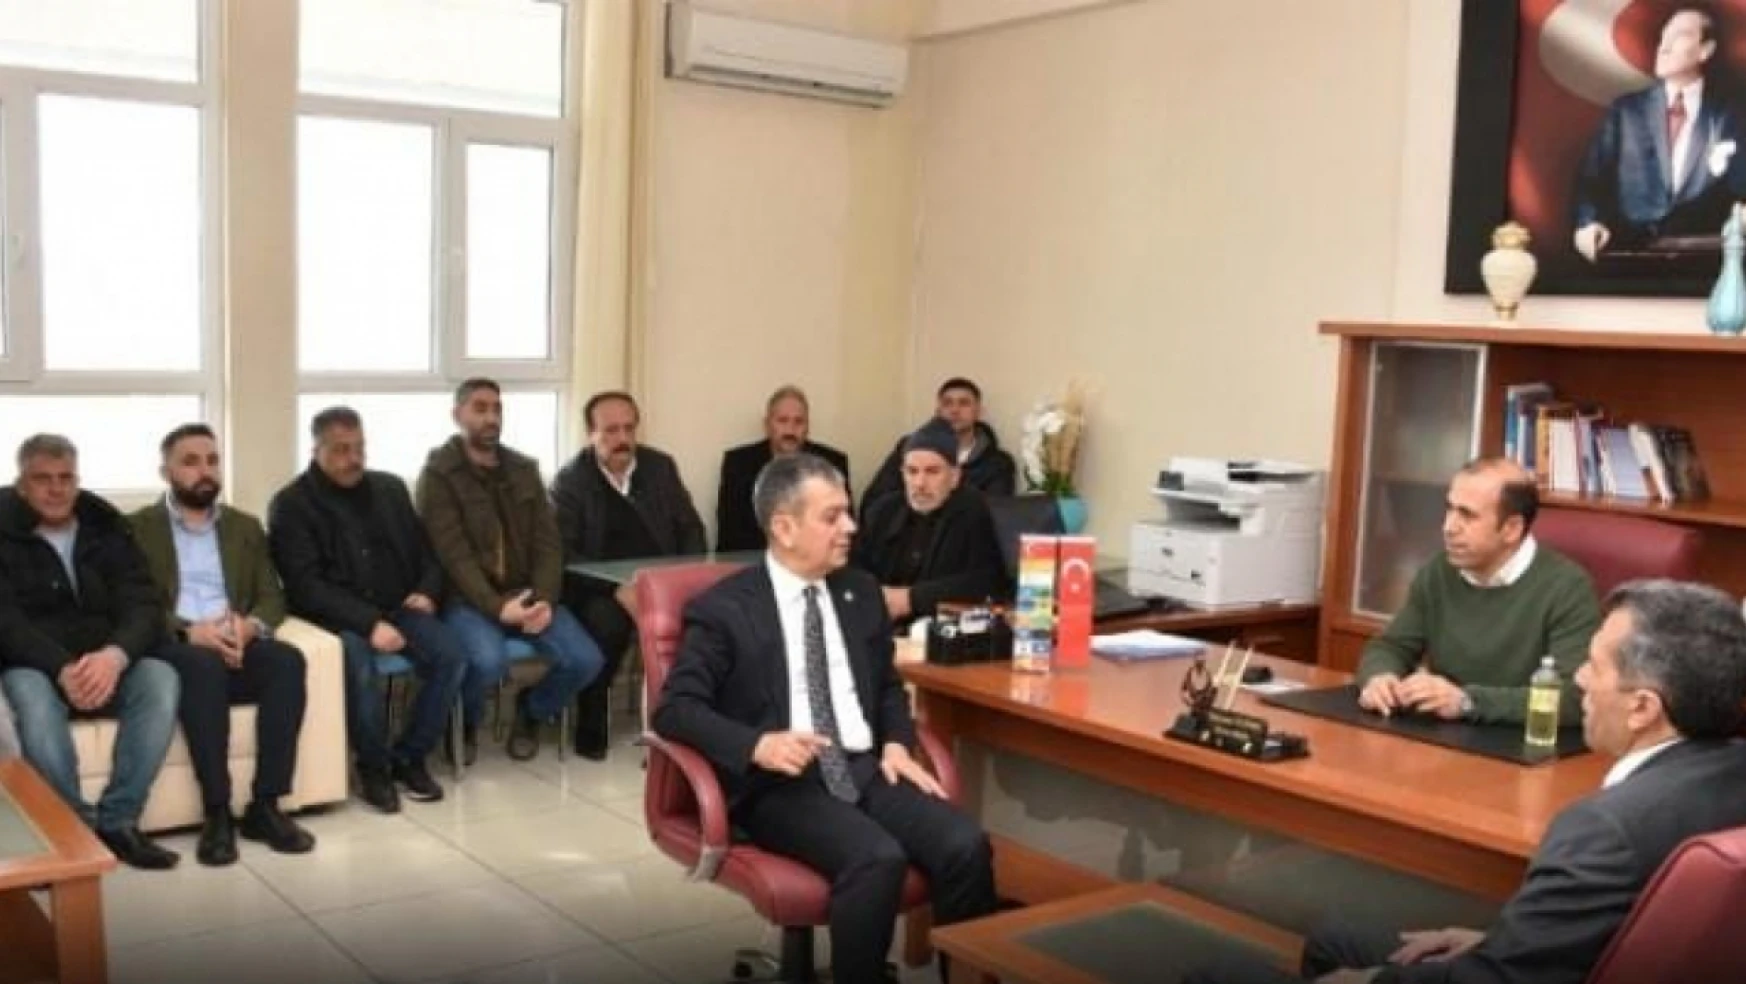 Milletvekili Keleş, Hazarbaba bakım ve rehabilitasyon merkezi'ni ziyaret etti